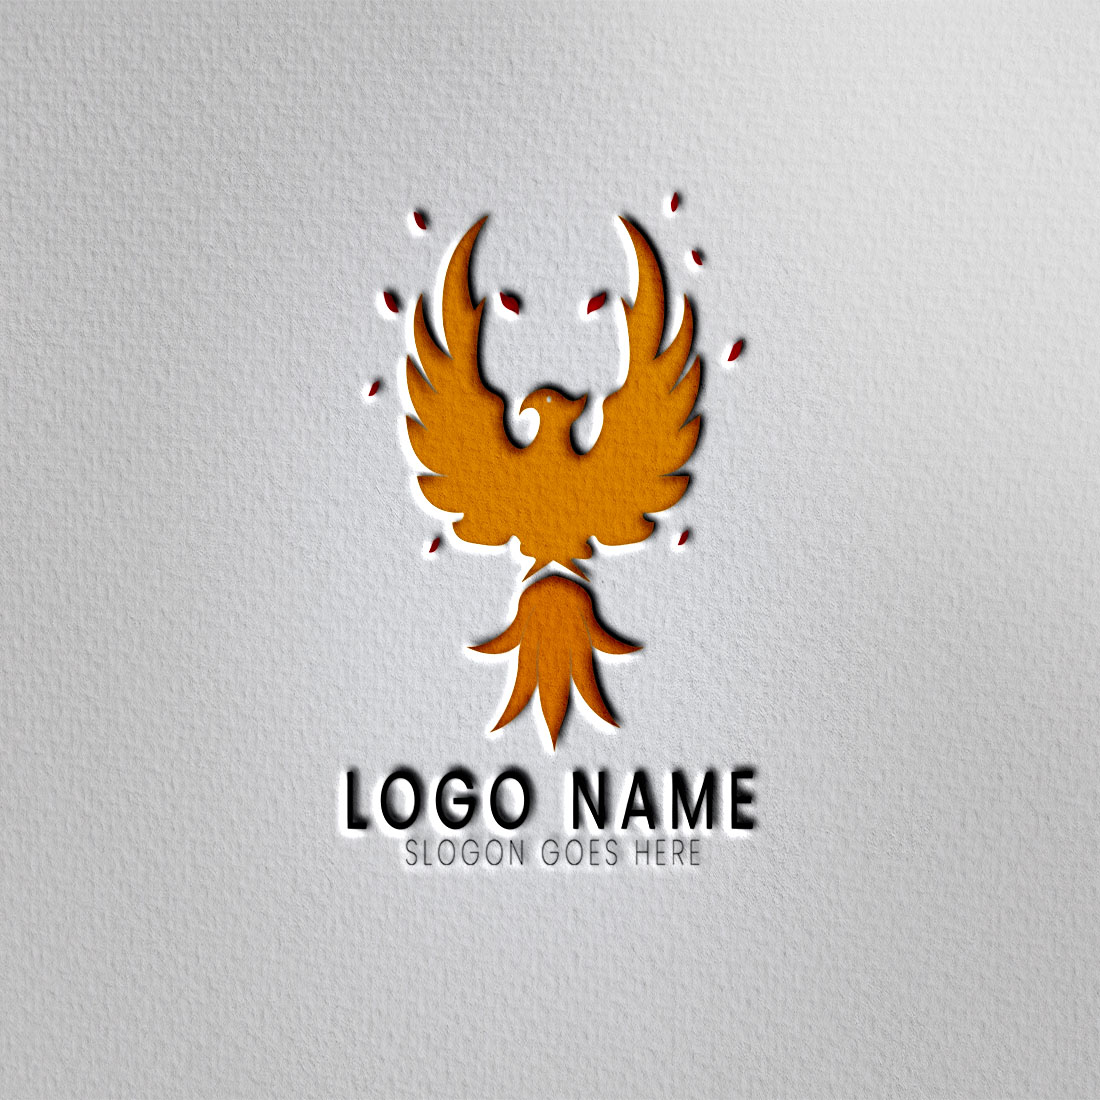 logo design preiview 2 778